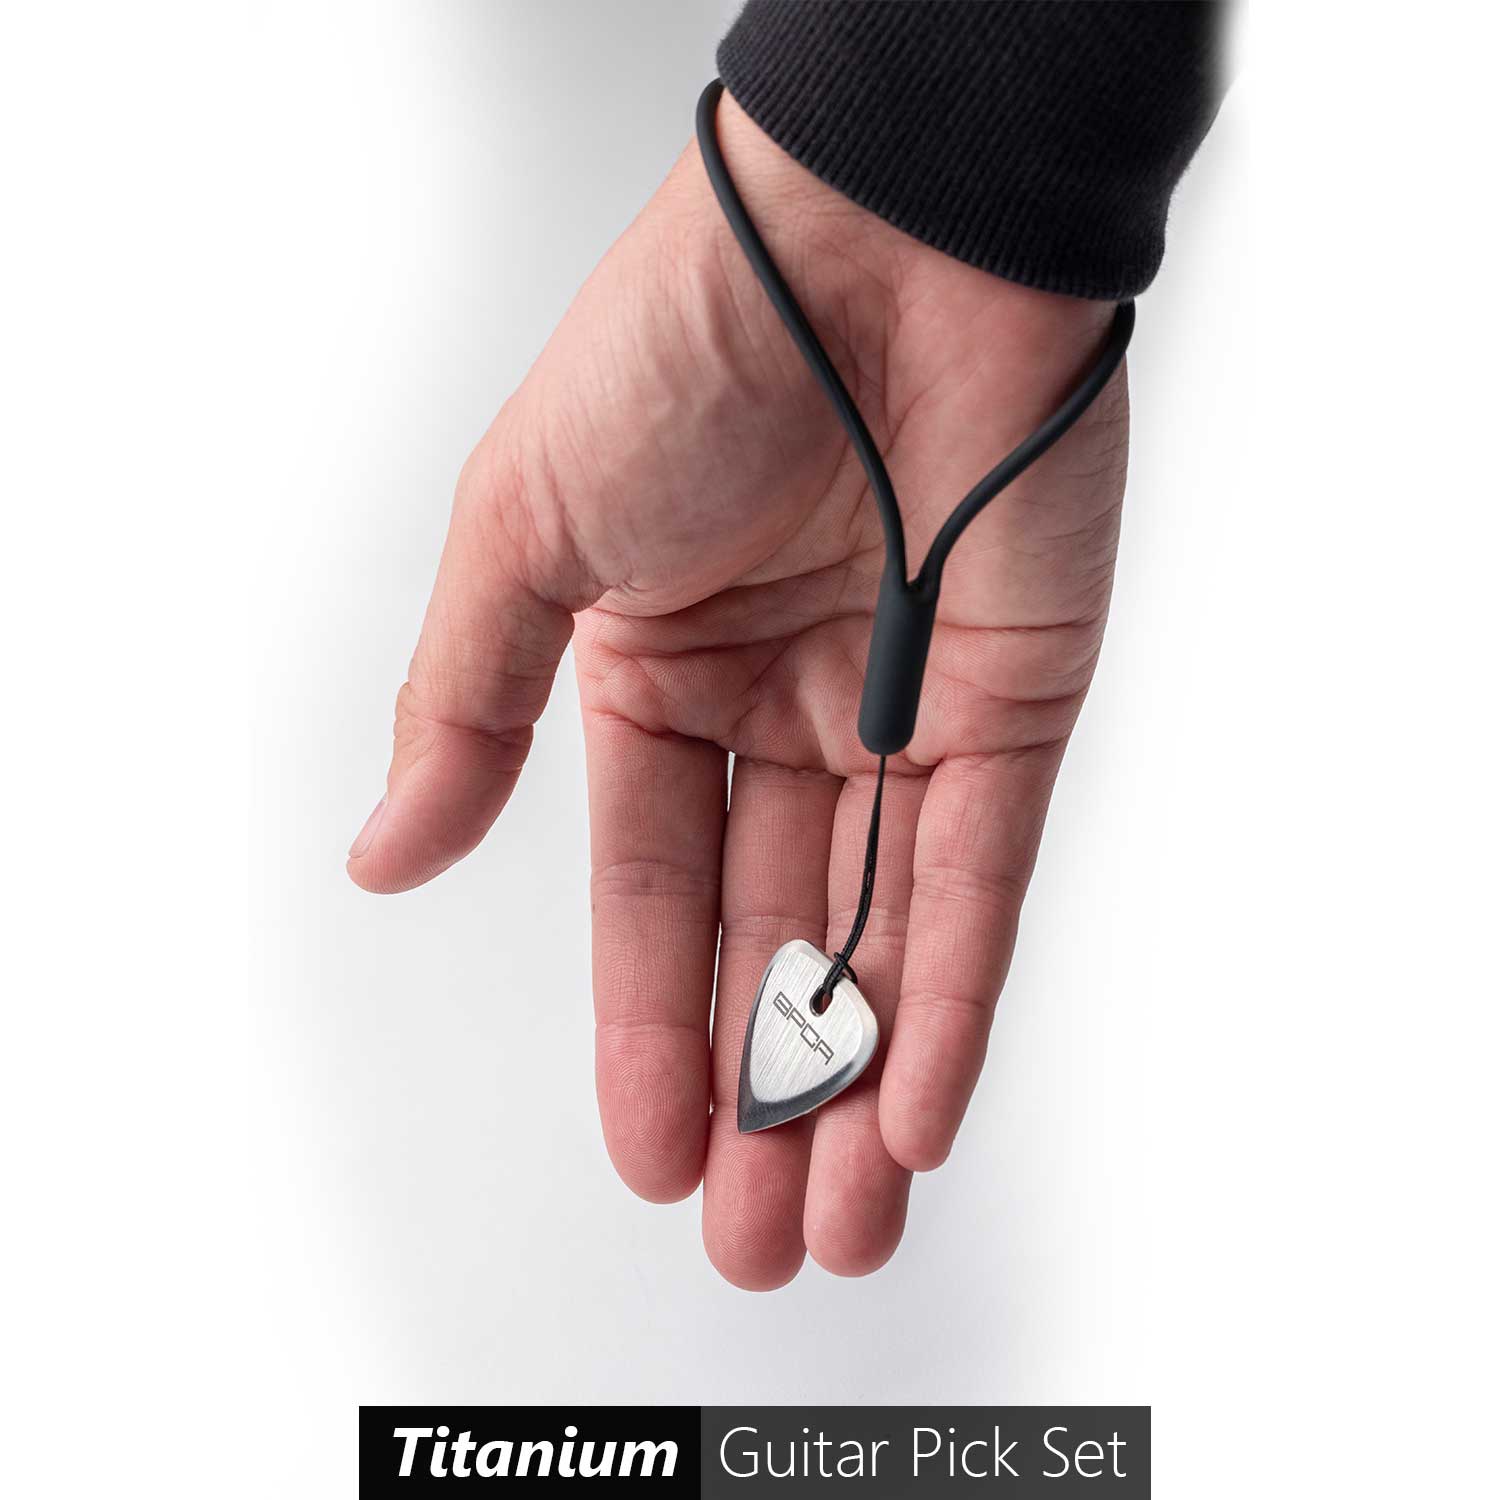 Titanium Guitar Picks by Superior Titanium